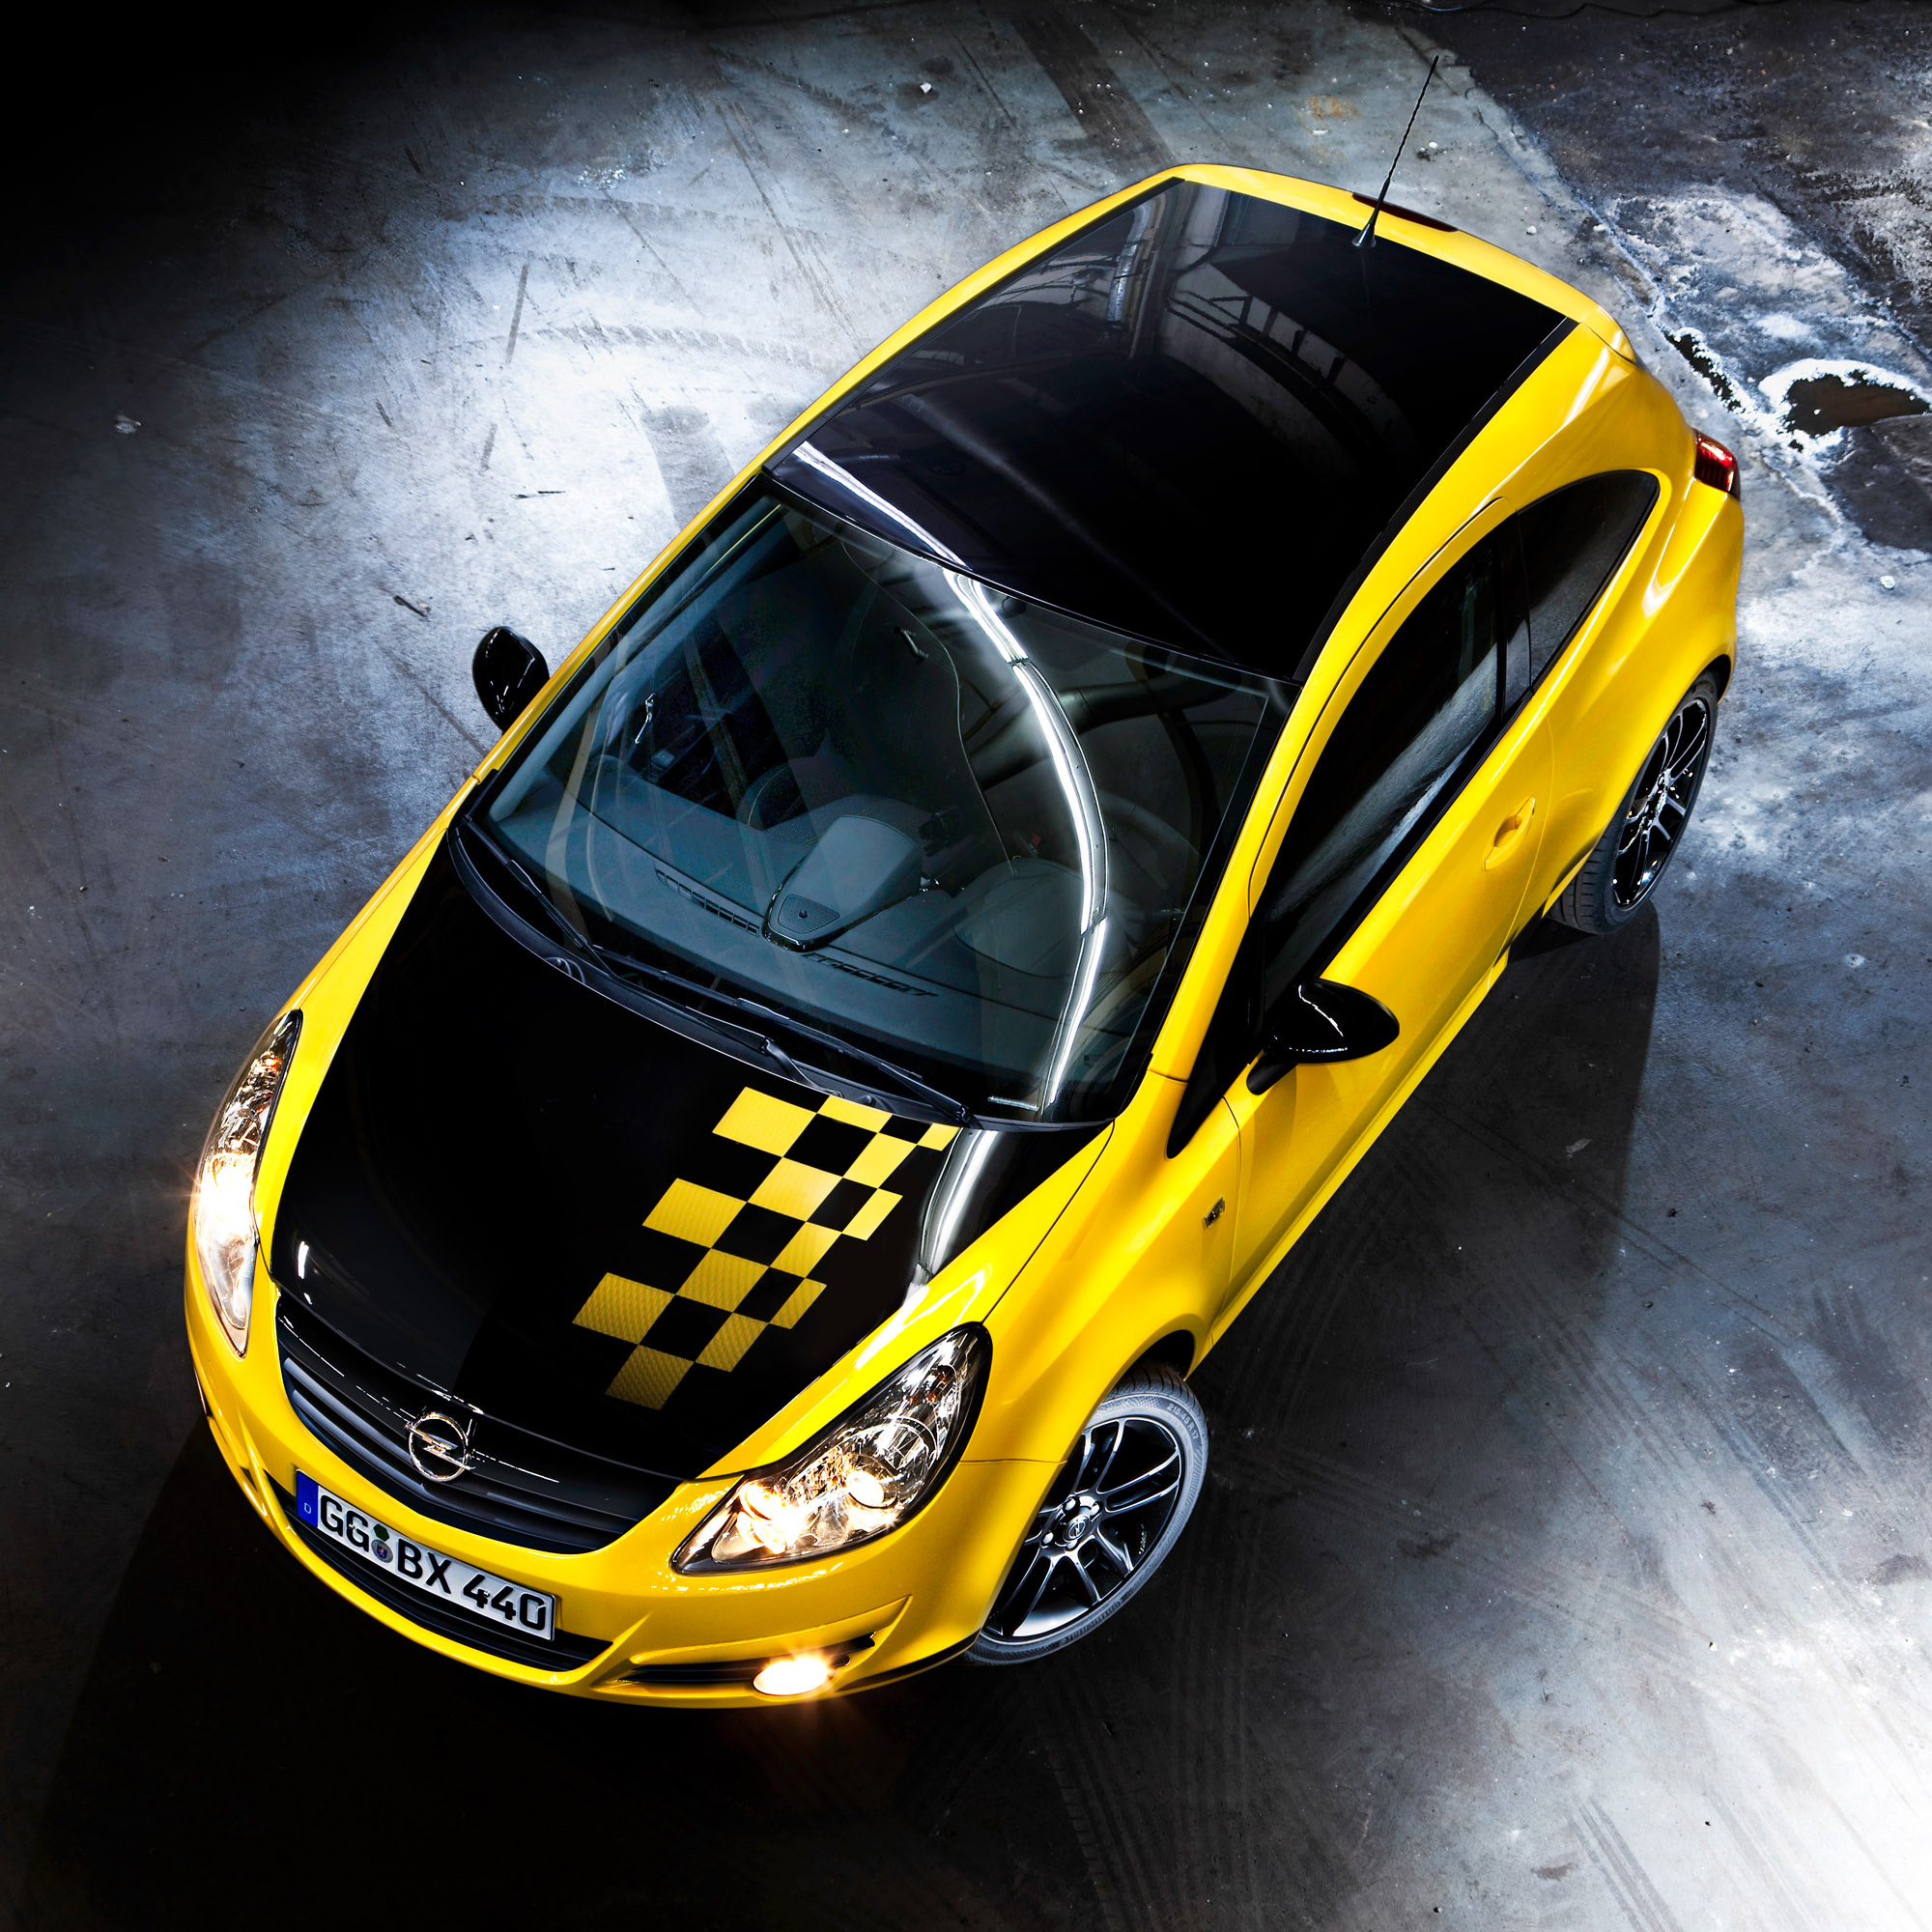 Opel Corsa, HD picture, 42220, 2000x2000 HD Handy